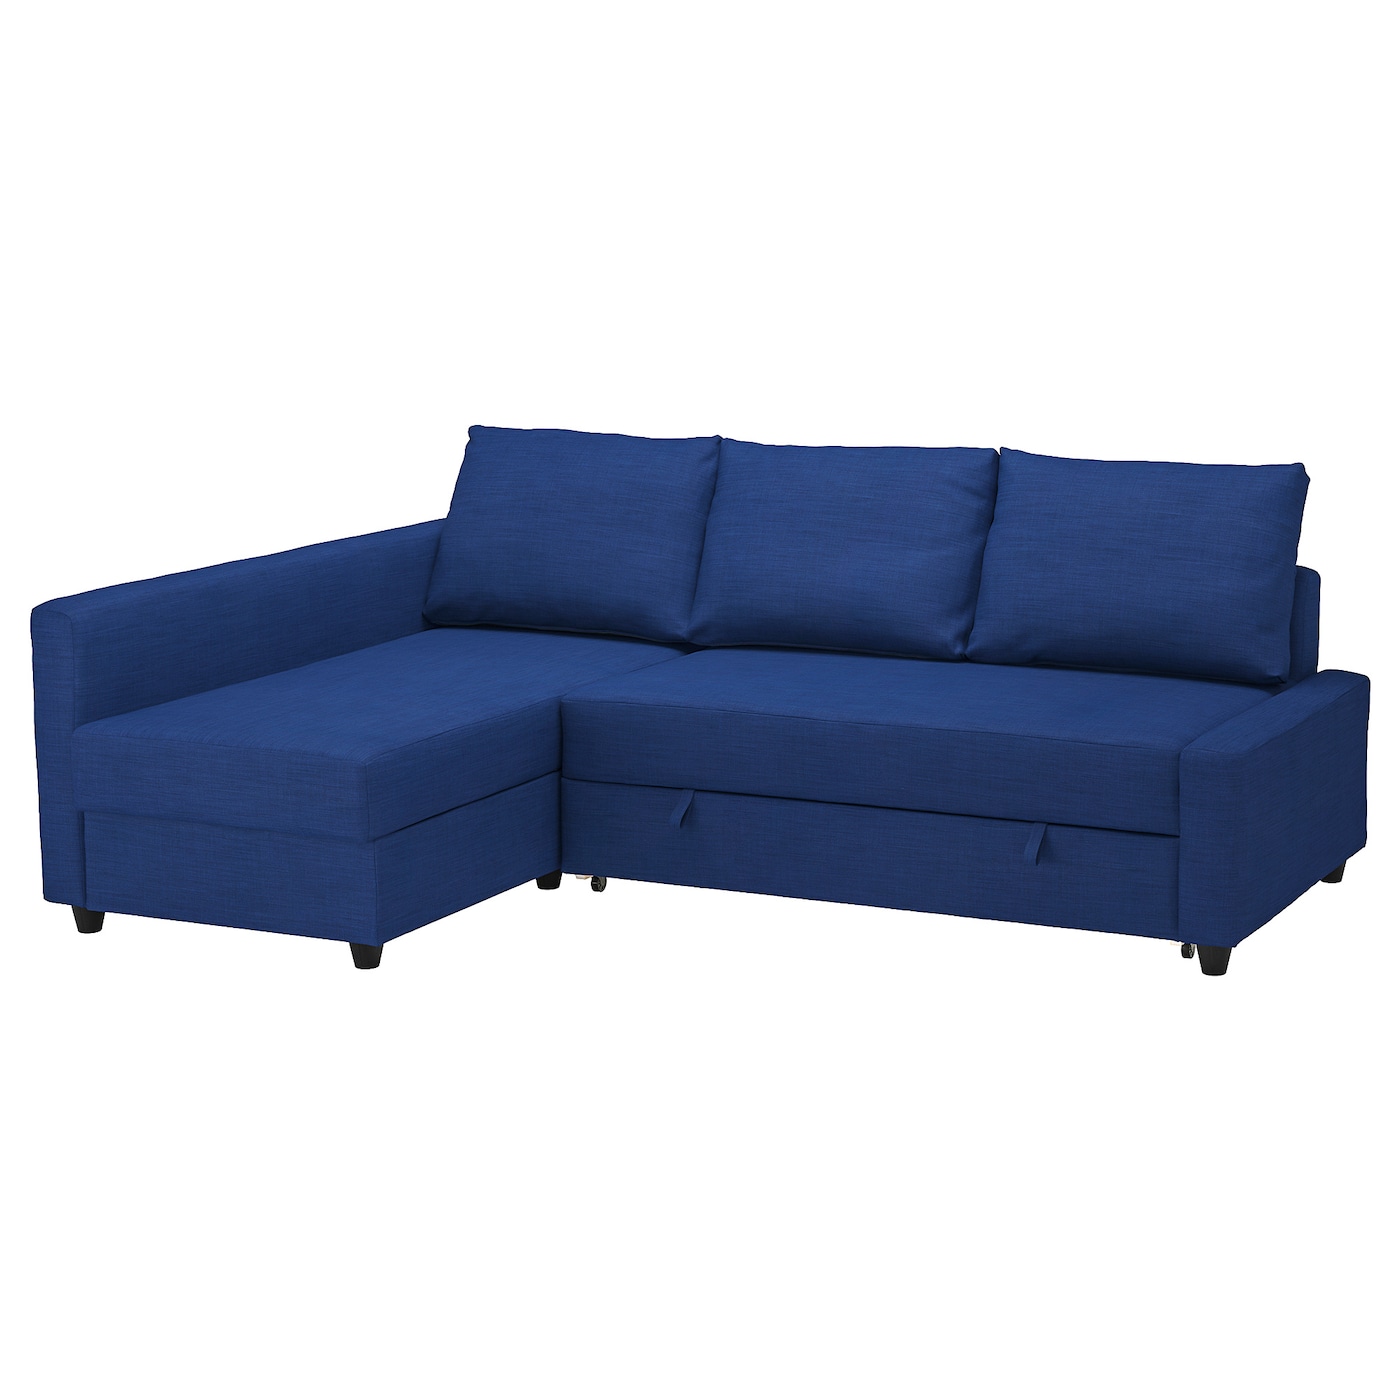 ФРИХЕТЕН Угловой диван-кровать + место для хранения, Скифтебо синий FRIHETEN IKEA диван кровать плимут тд 380